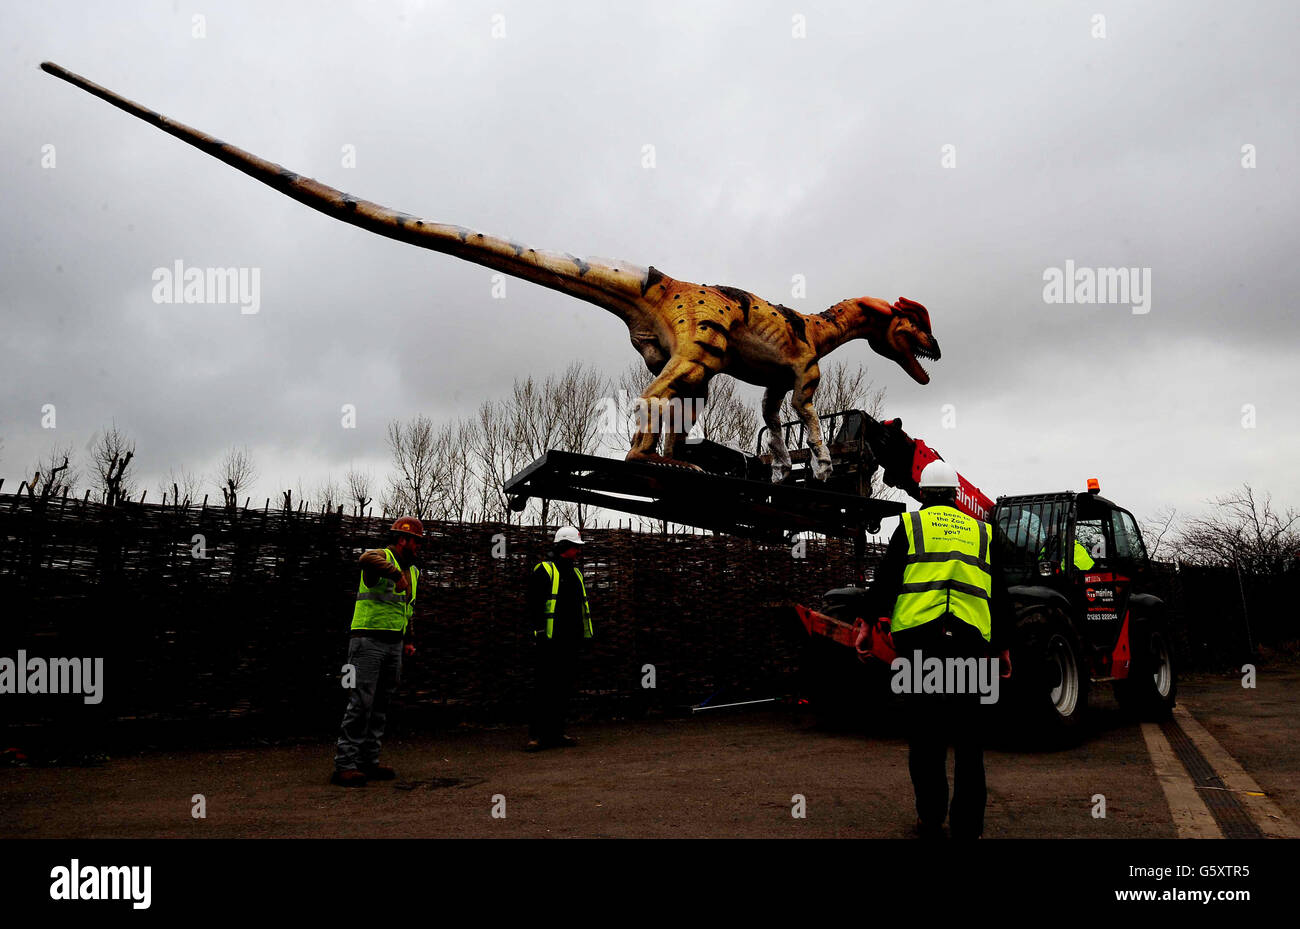 Un dinosauro Dilophosaurus al suo arrivo allo Zoo di Twycross, dove quindici dinosauri sono la caratteristica principale di una nuova attrazione che apre la Pasqua 2013, la Dinosaur Valley presso lo zoo di Warwickshire. Foto Stock